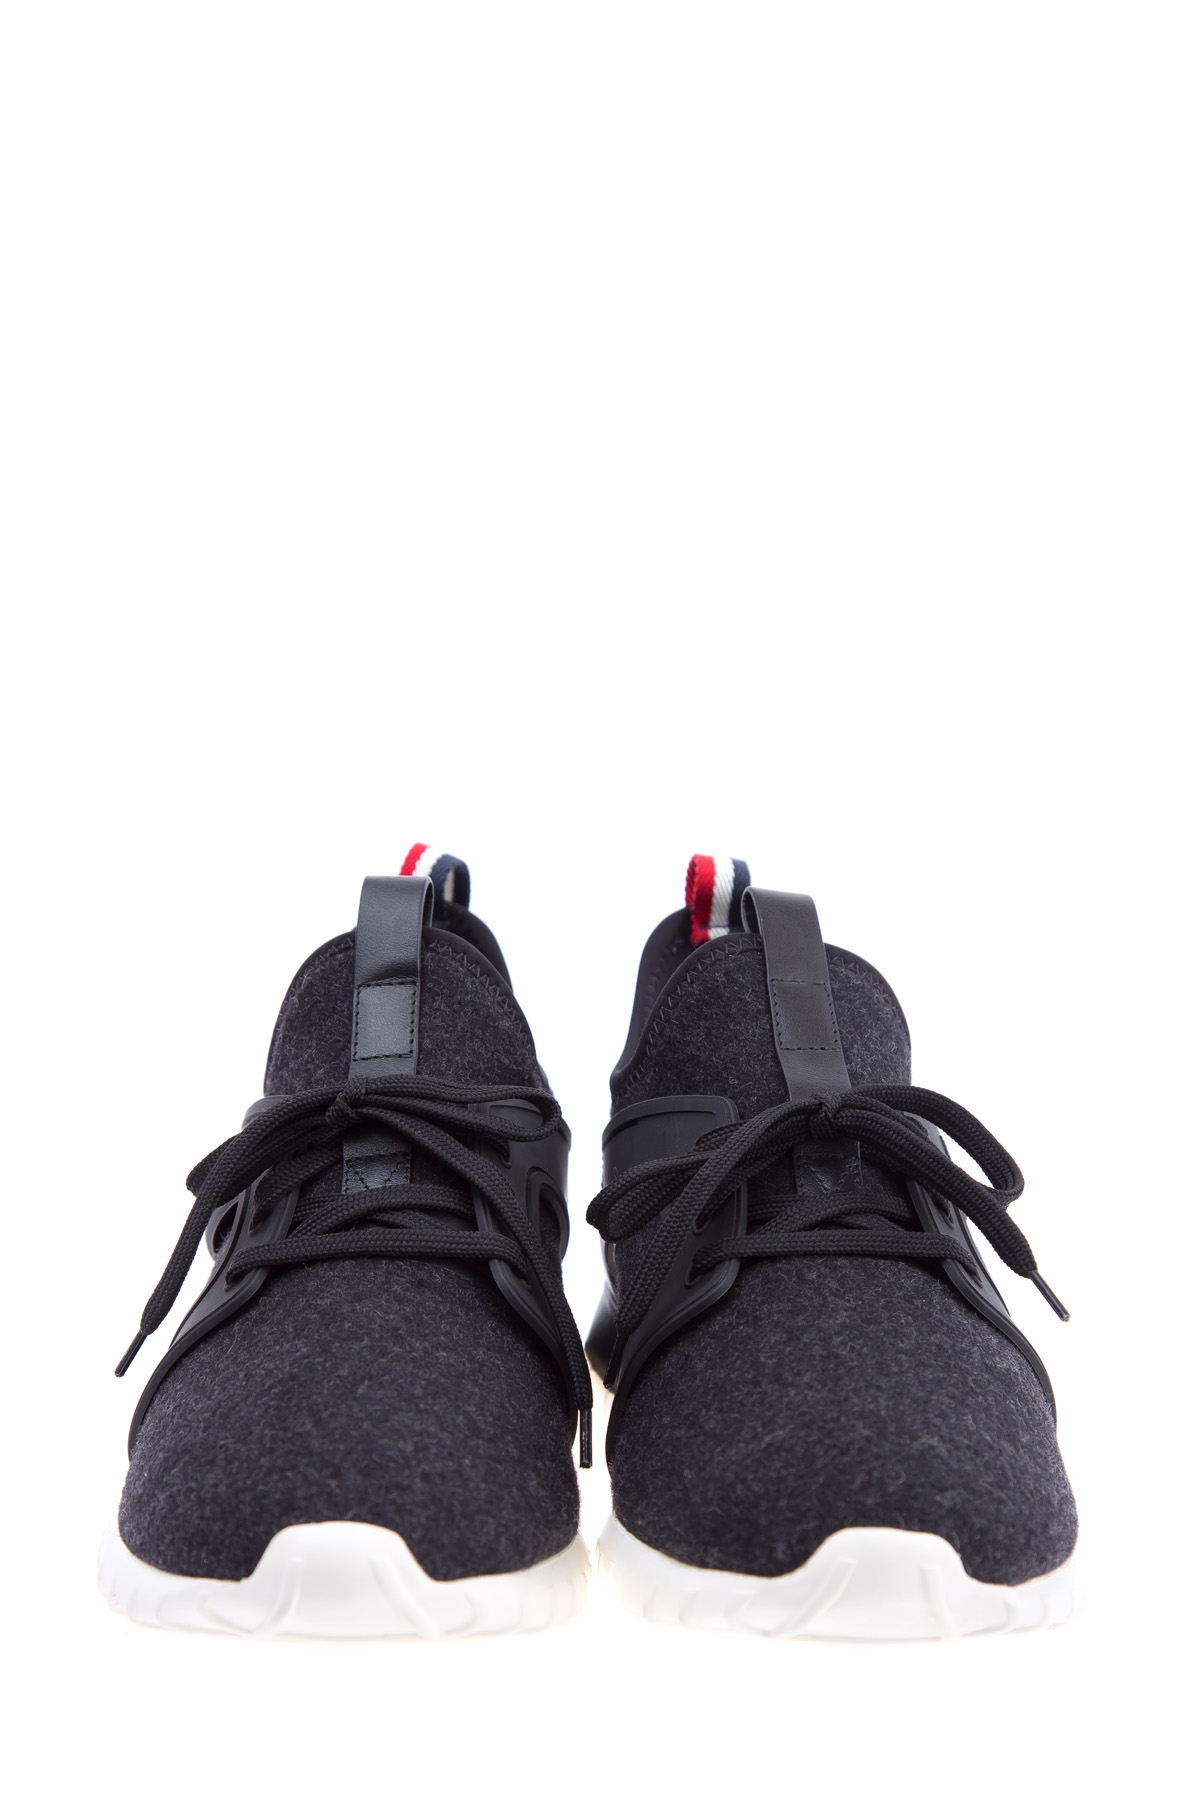 Кроссовки Emilien из шерстяного войлока с отделкой из кожи MONCLER, цвет черно-белый, размер 39;40 - фото 5